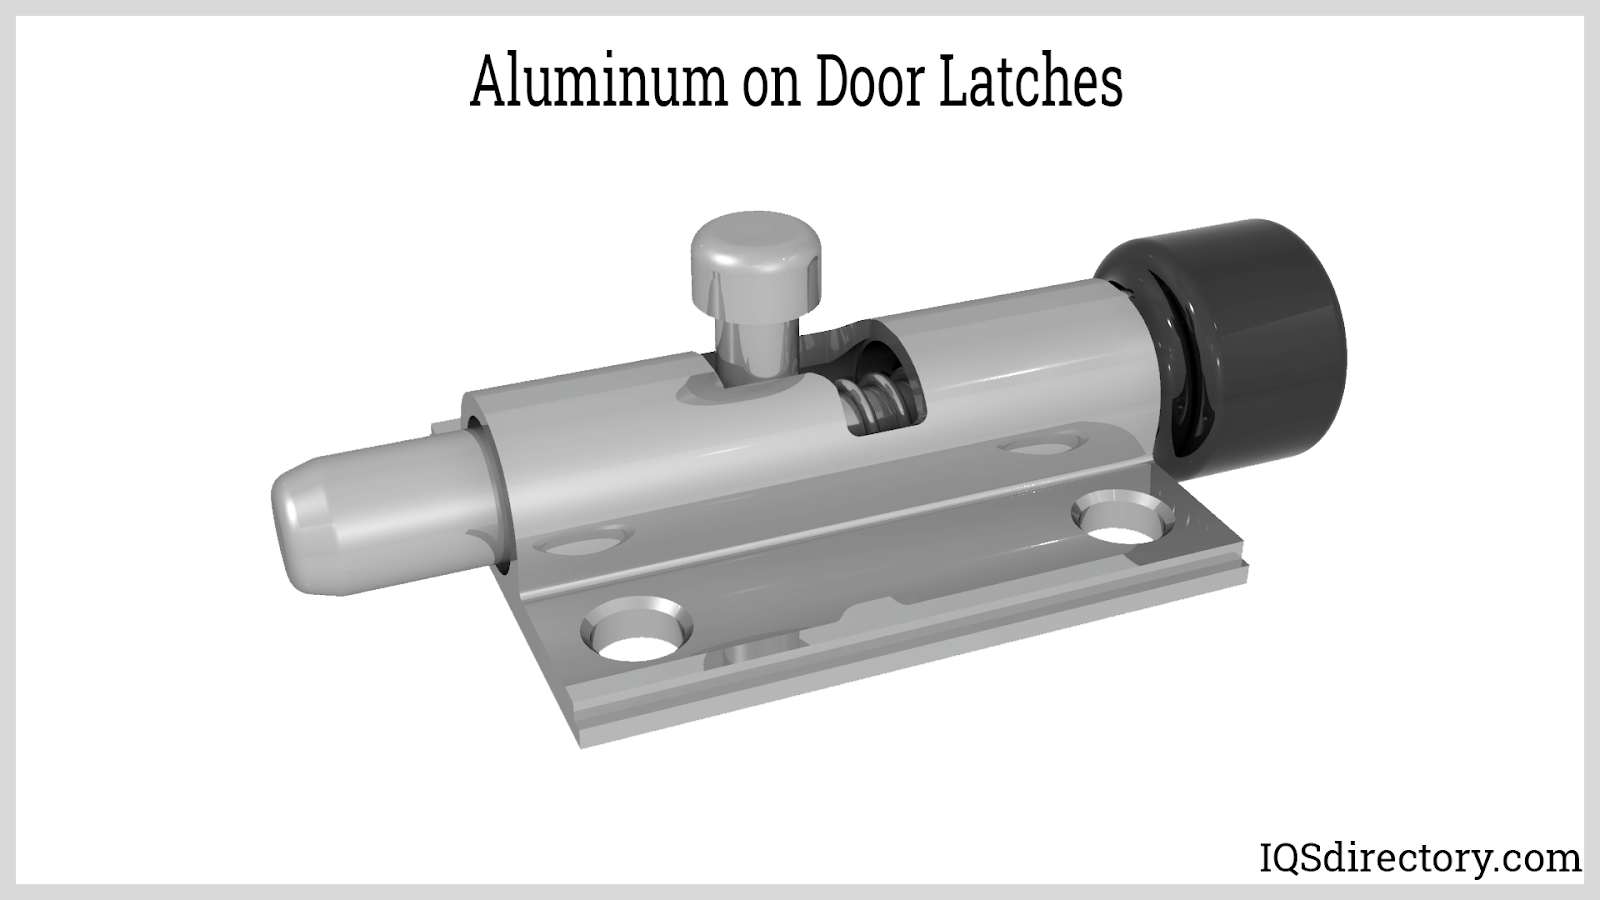 Aluminum on Door Latches